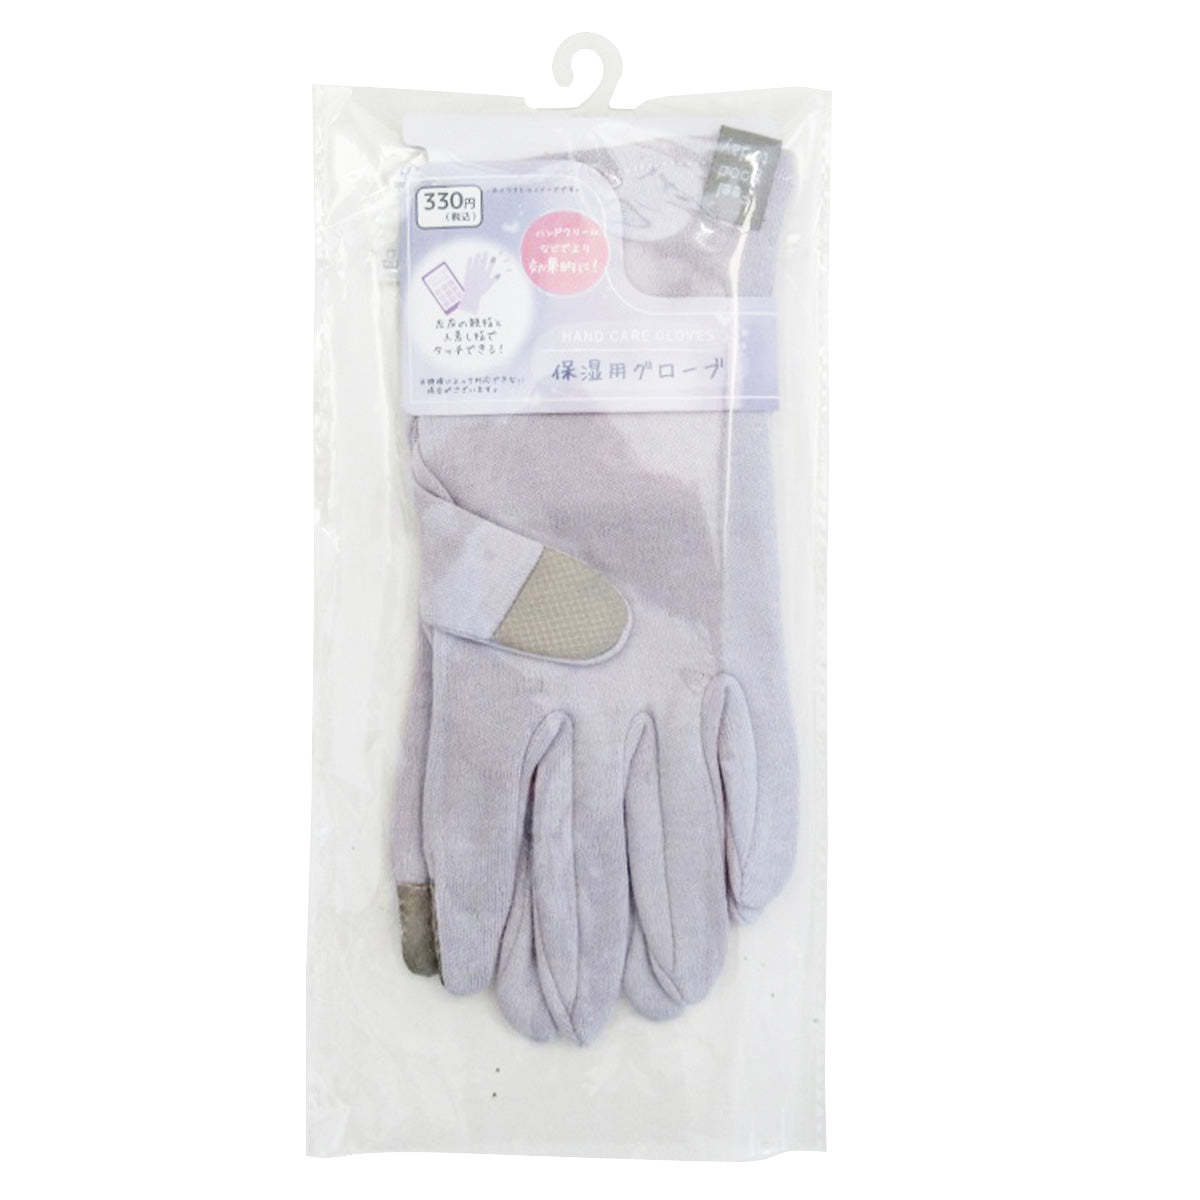 【在庫限り】保湿用グローブ 手袋 乾燥対策 ラベンダー 359655